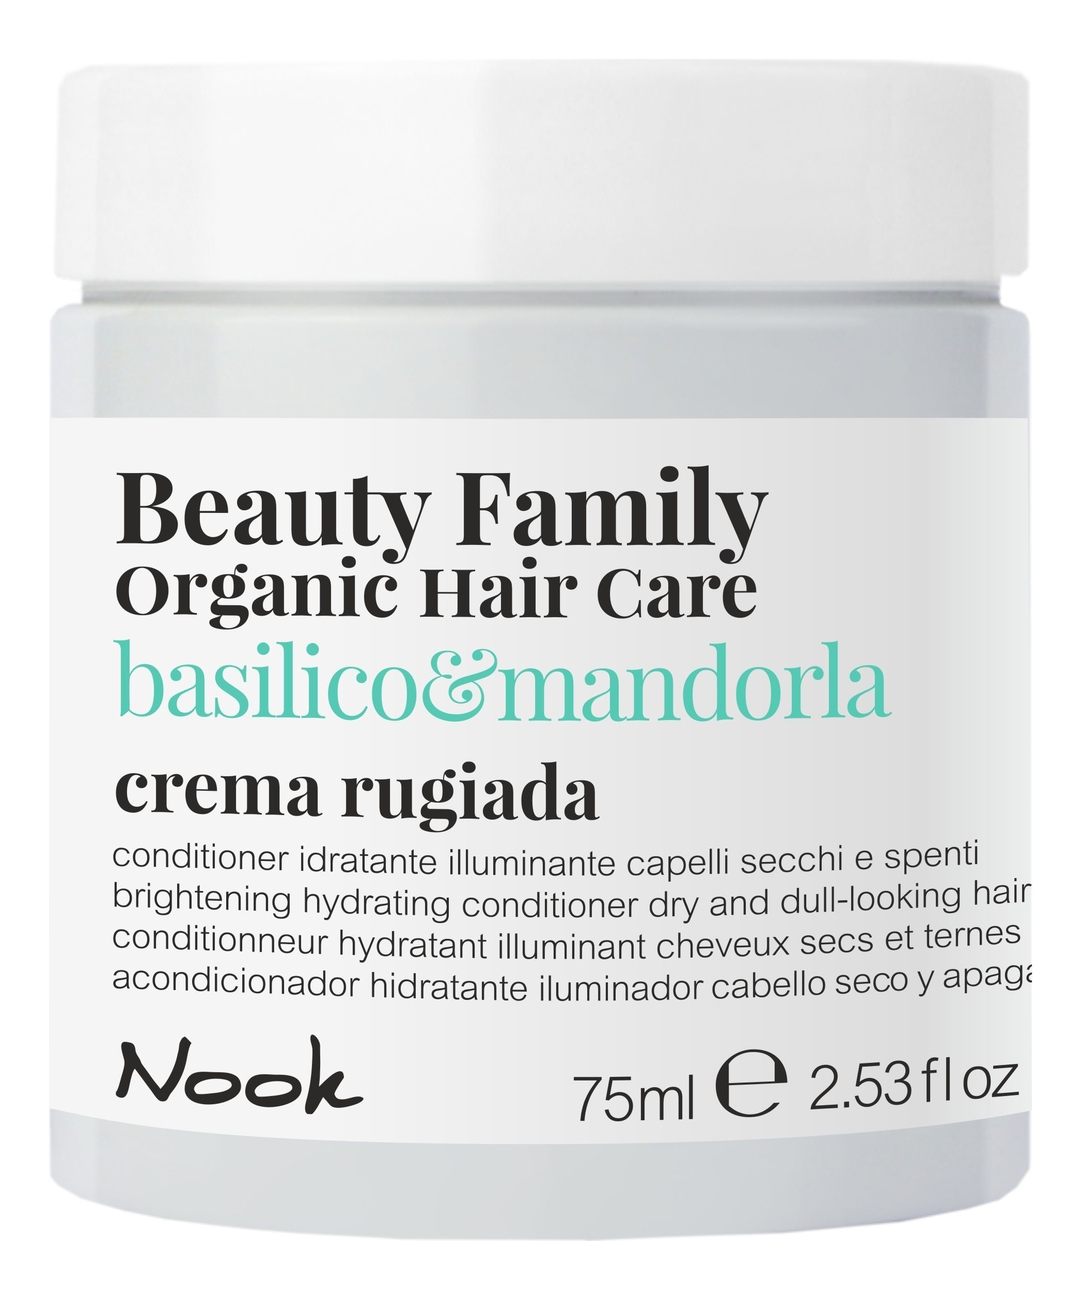 Крем-кондиционер для сухих и тусклых волос Beauty Family Crema Rugiada Basilico & Mandorla: Крем-кондиционер 75мл крем кондиционер для сухих и тусклых волос nook basilico